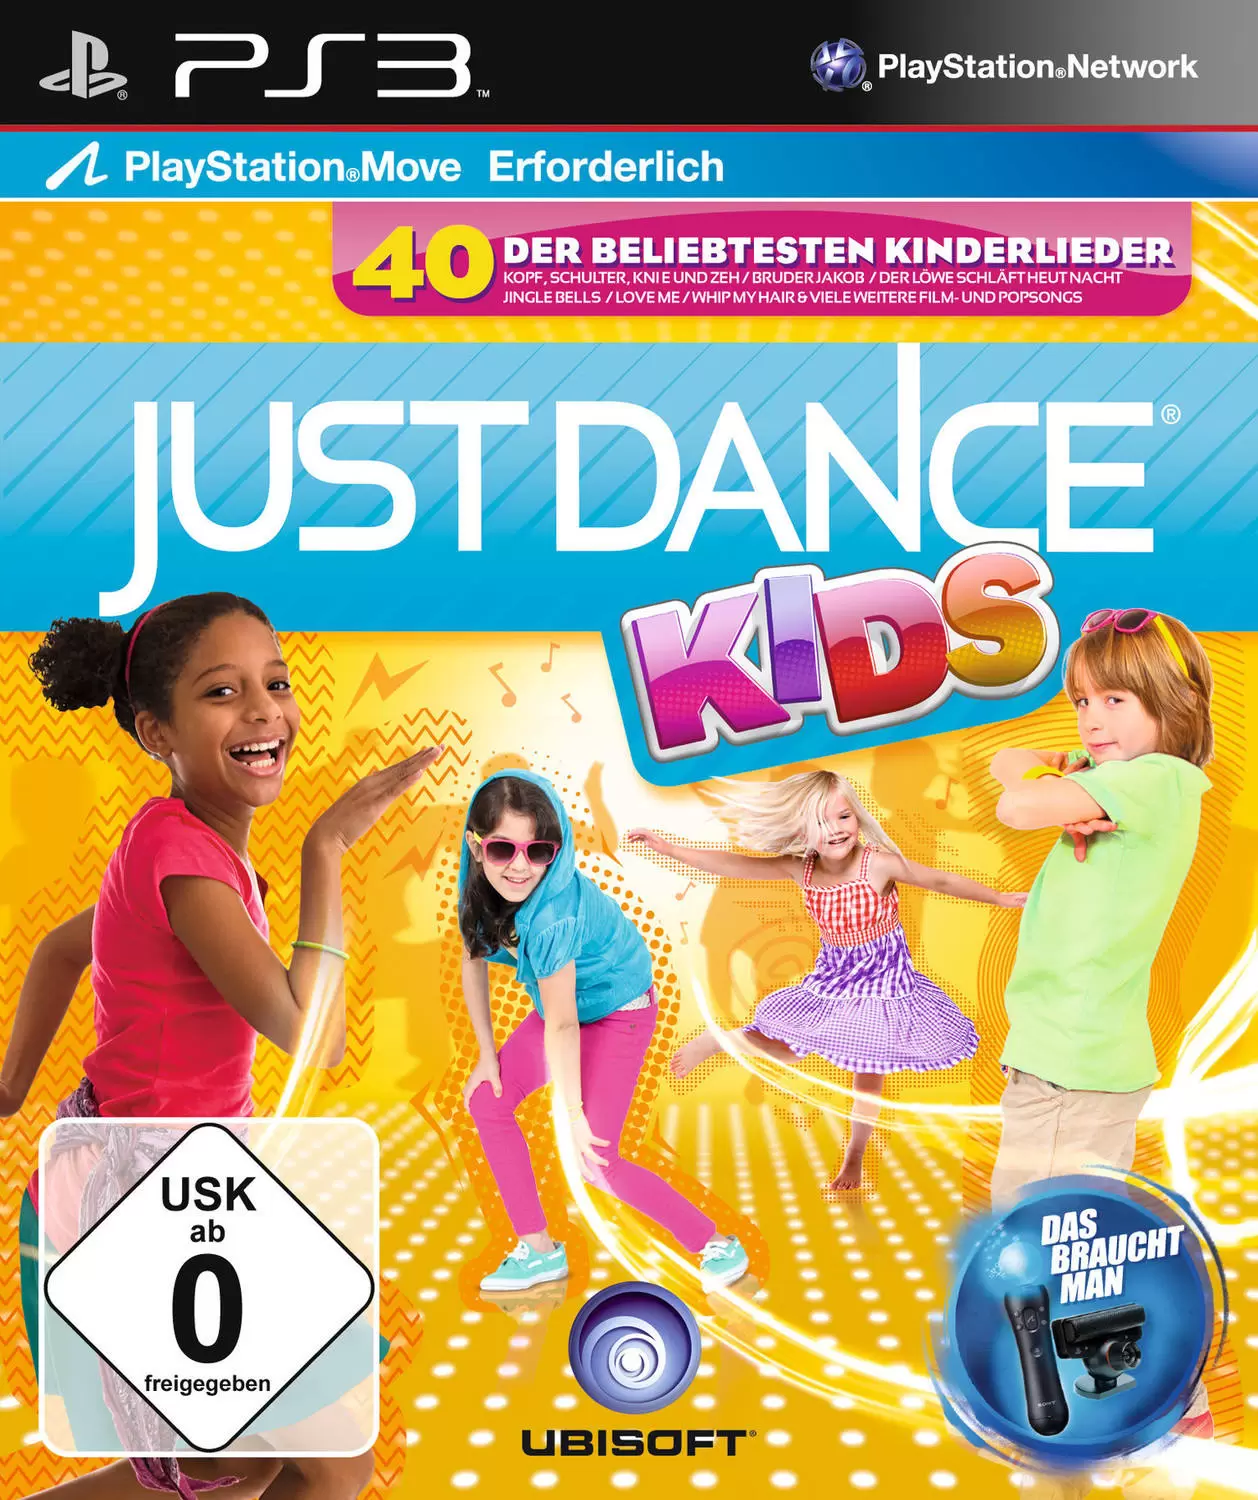 Jeux PS3 - Just Dance kids